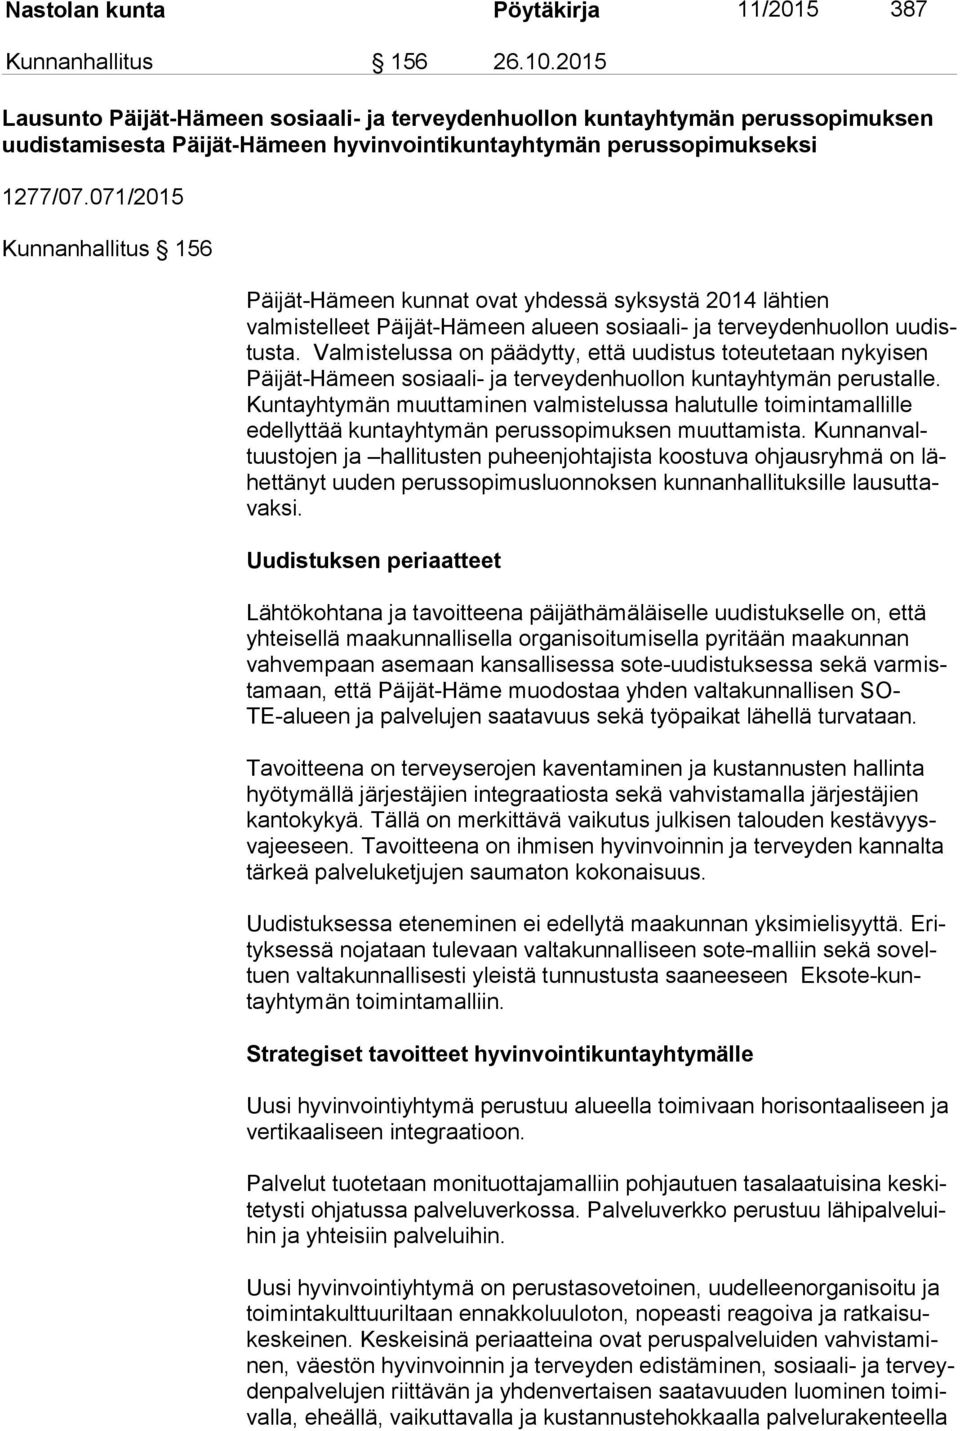 071/2015 Kunnanhallitus 156 Päijät-Hämeen kunnat ovat yhdessä syksystä 2014 lähtien val mis tel leet Päijät-Hämeen alueen sosiaali- ja terveydenhuollon uu distus ta.